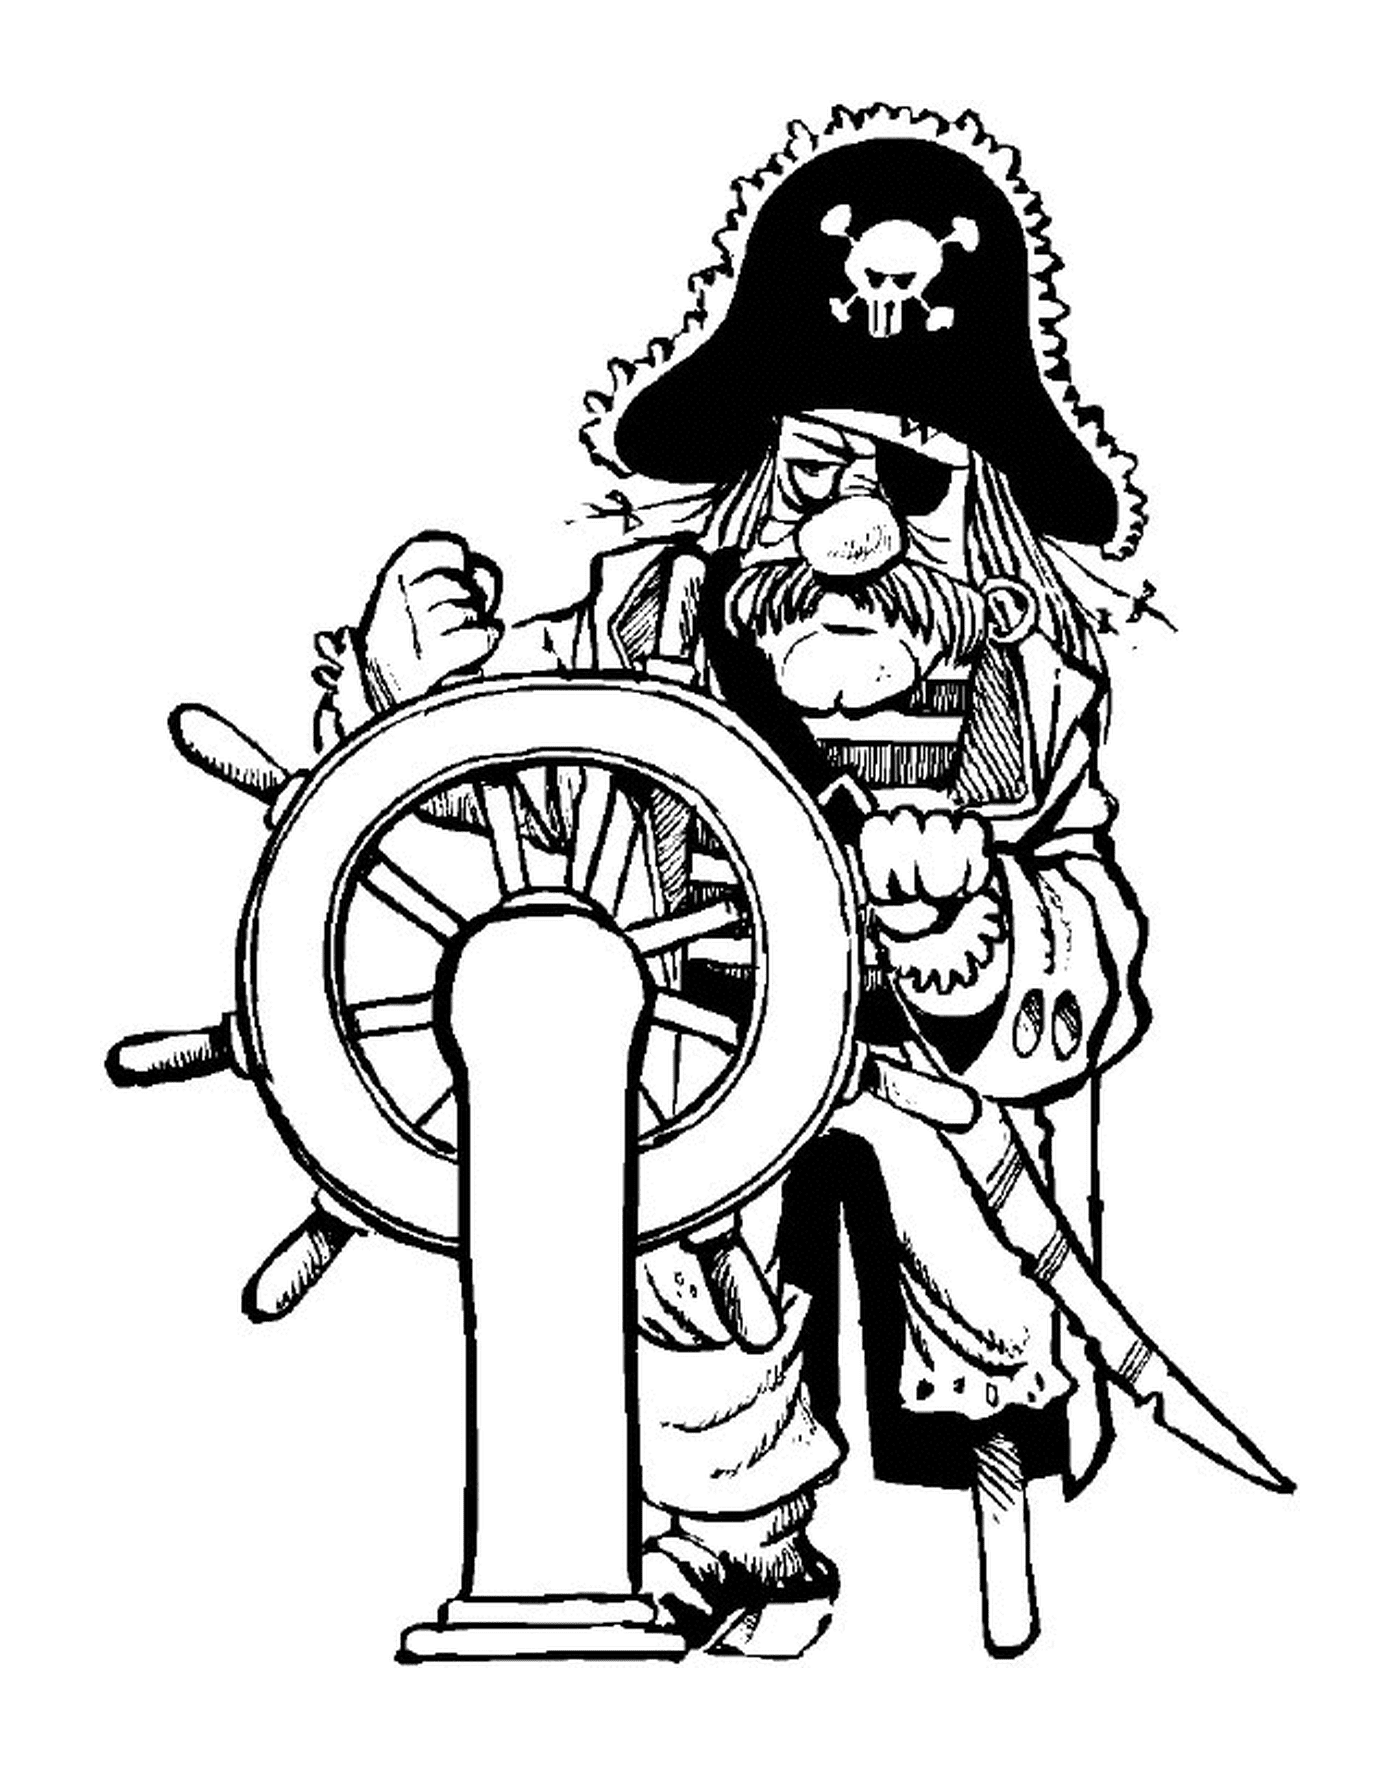  海盗船长掌舵 